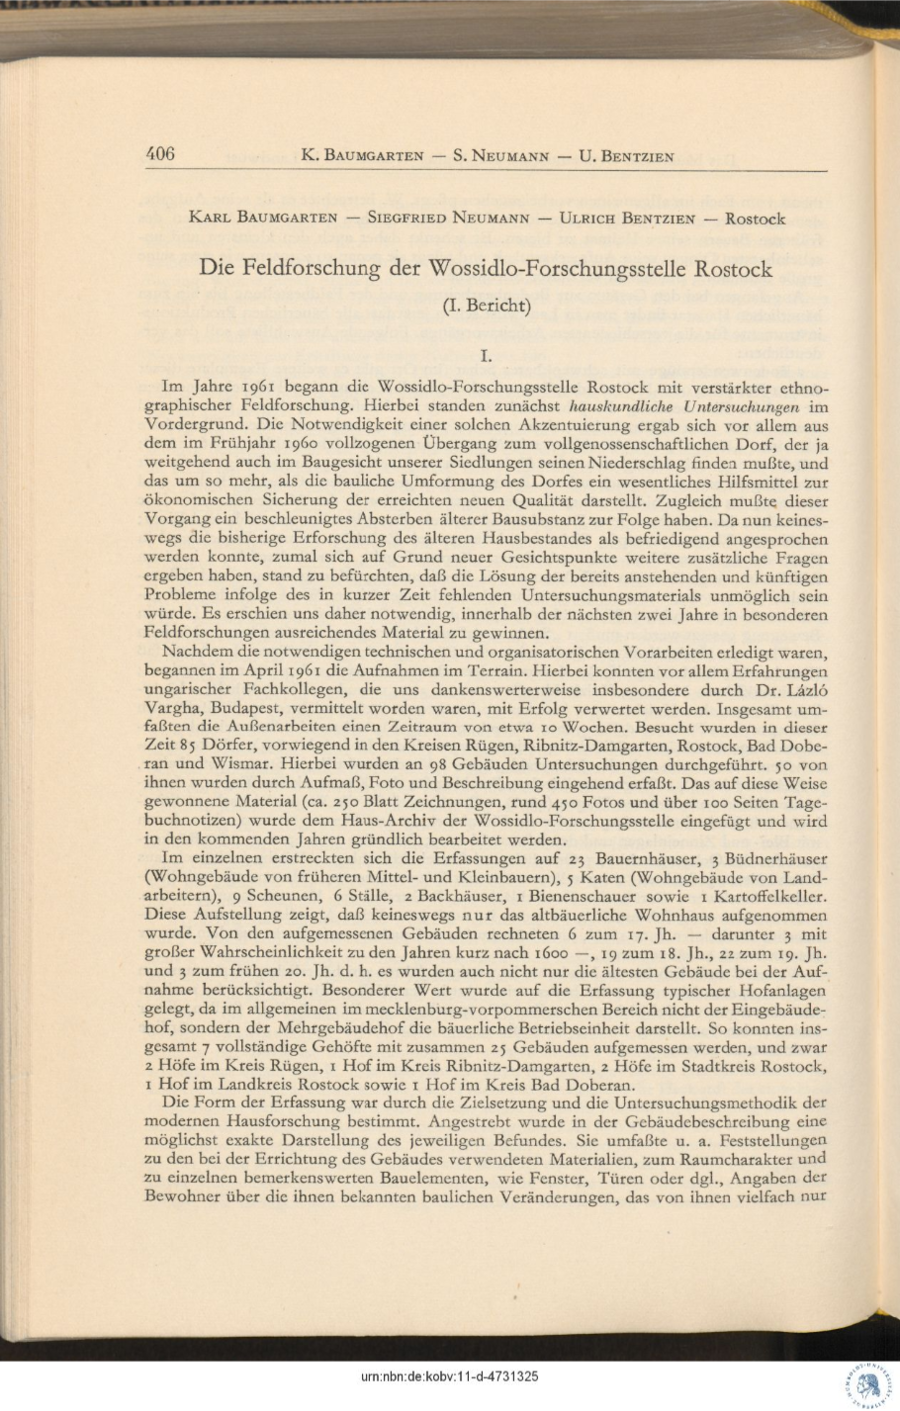 Baumgarten 1962 Feldforschung Wossidlo Forschungsstelle 74